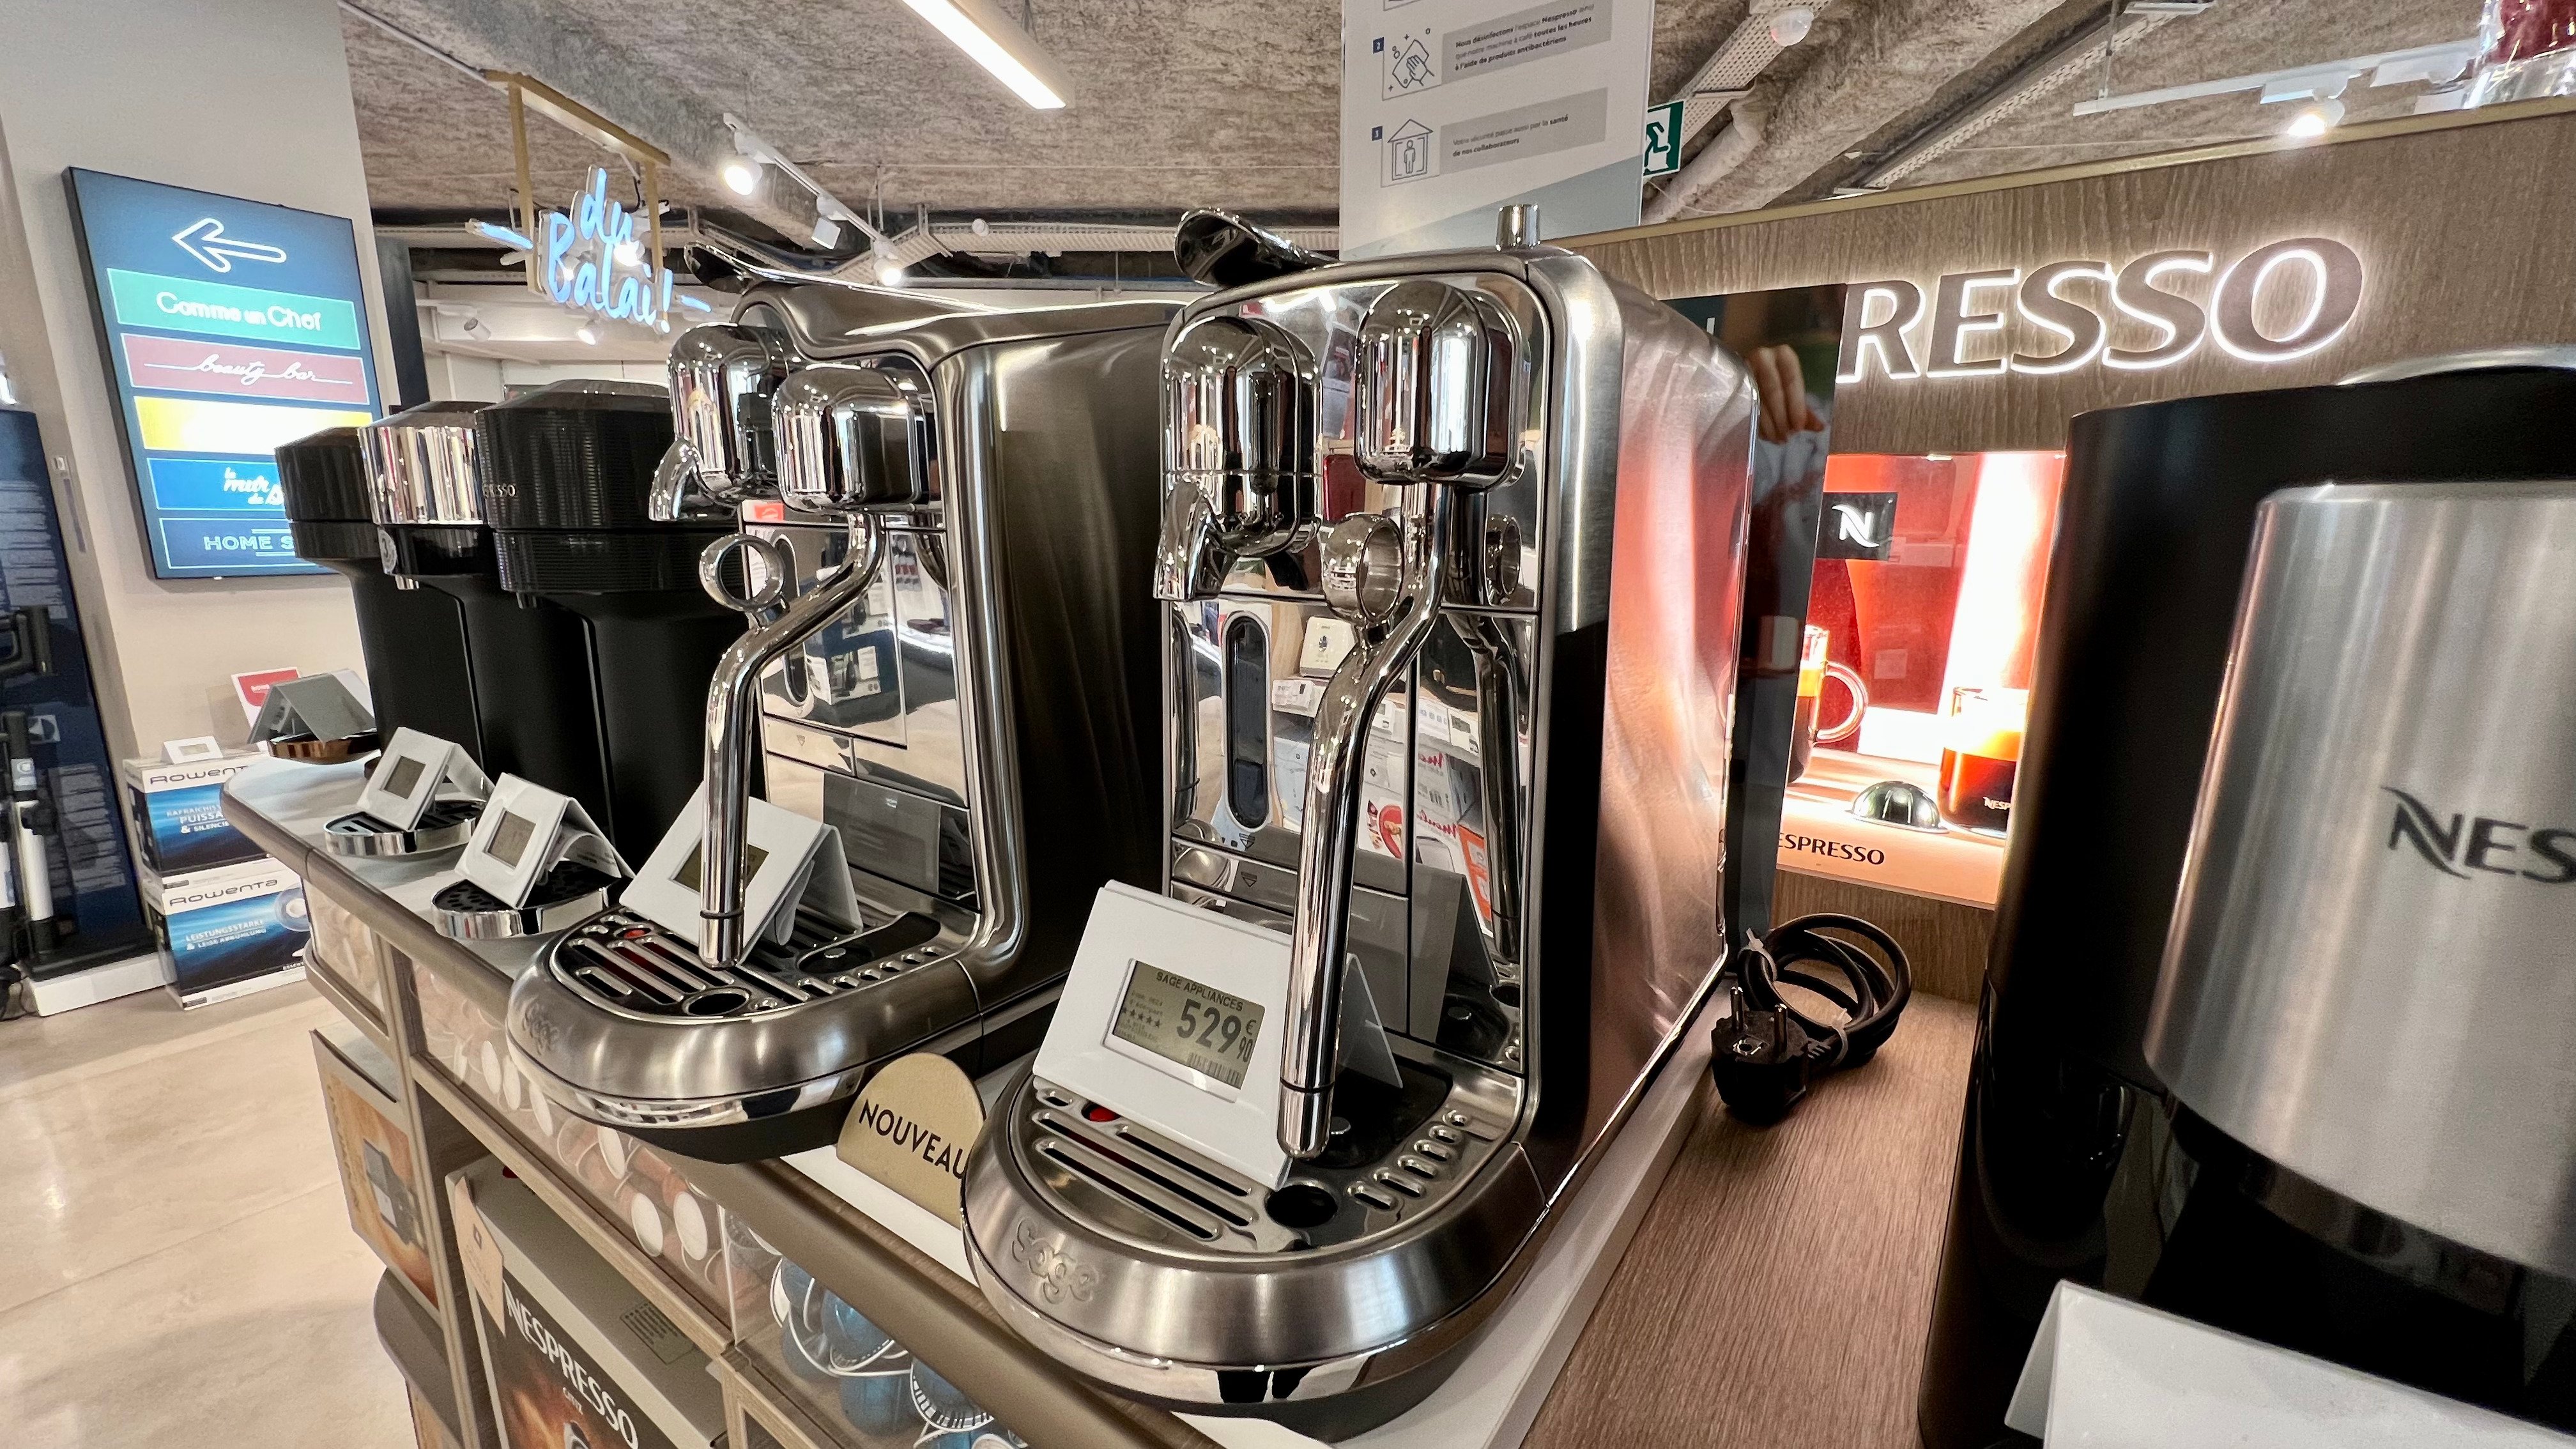 machine nespresso, sage appliances à découvrir à Boulanger Paris Beaugrenelle